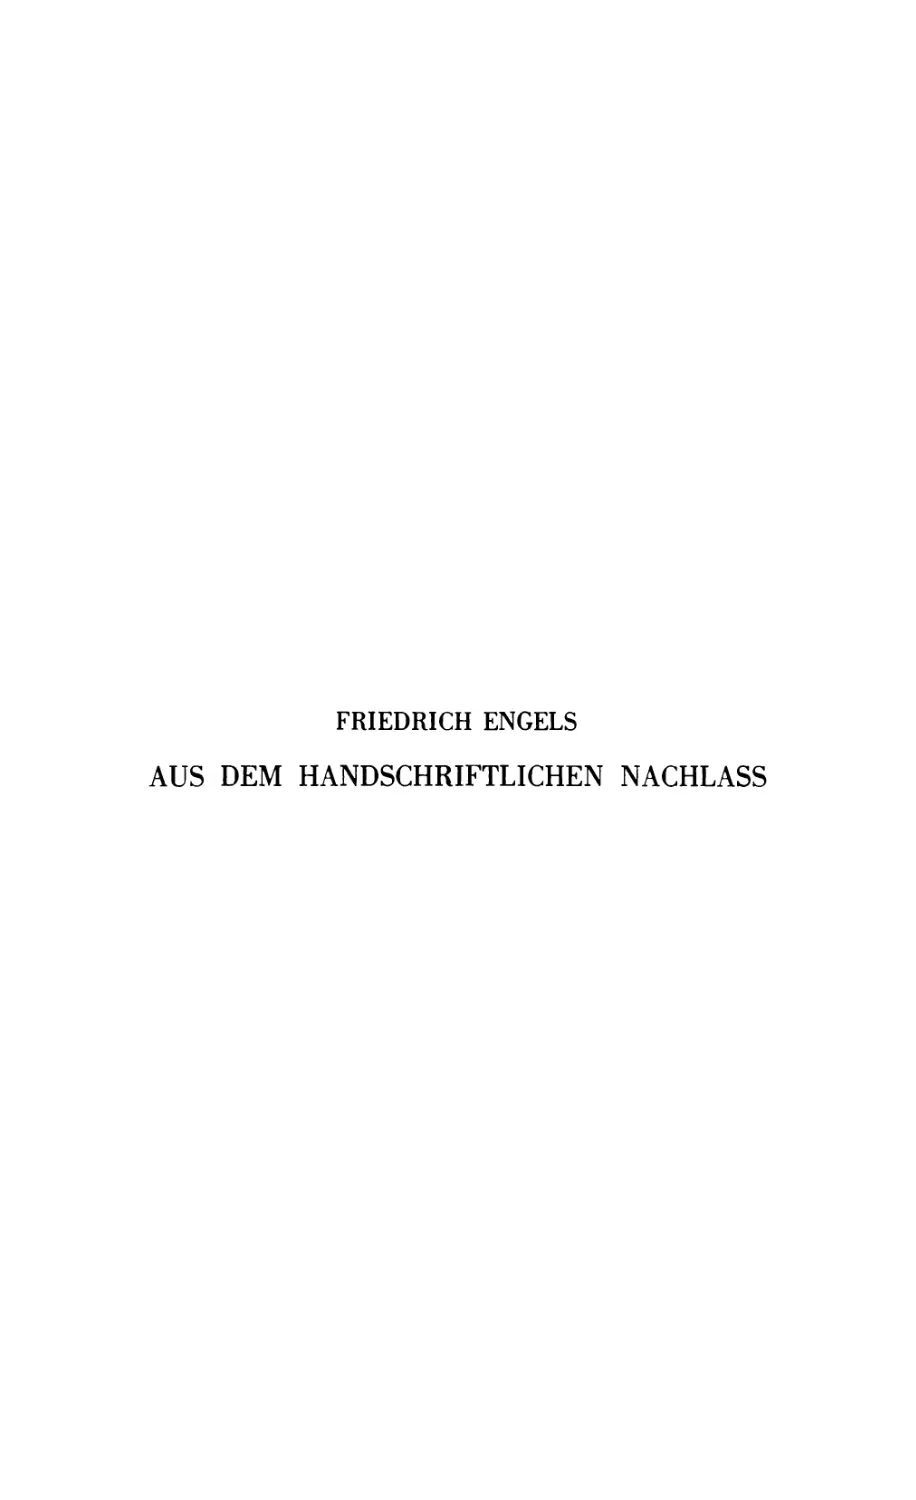 Friedrich Engels, Aus dem handschriftlichen Nachlaß